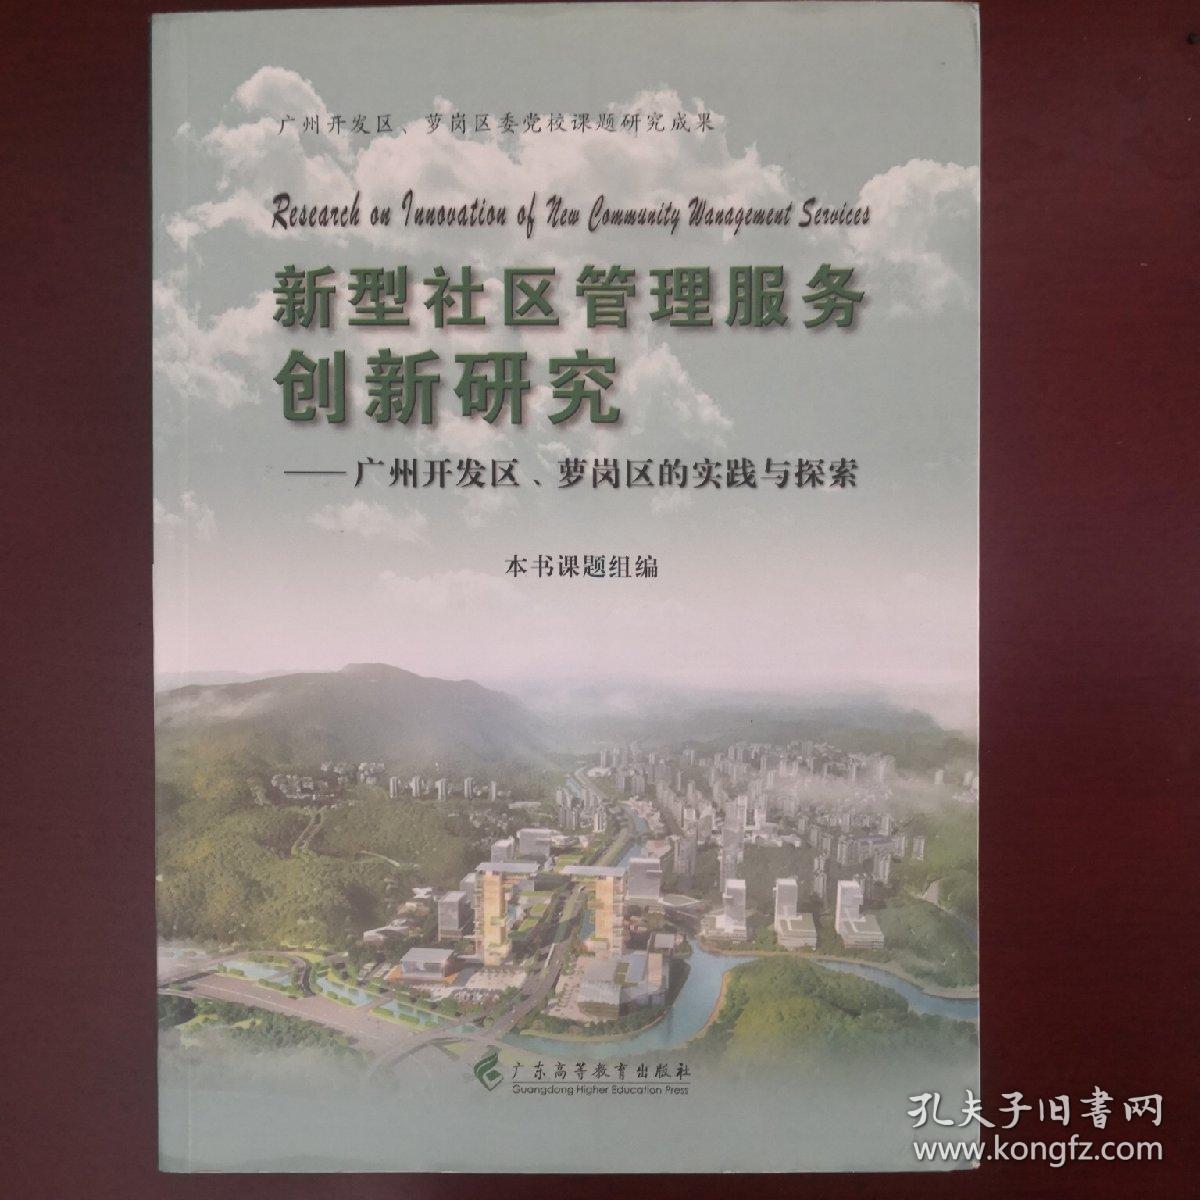 新型社区管理服务创新研究：广州开发区、萝岗区的实践与探索